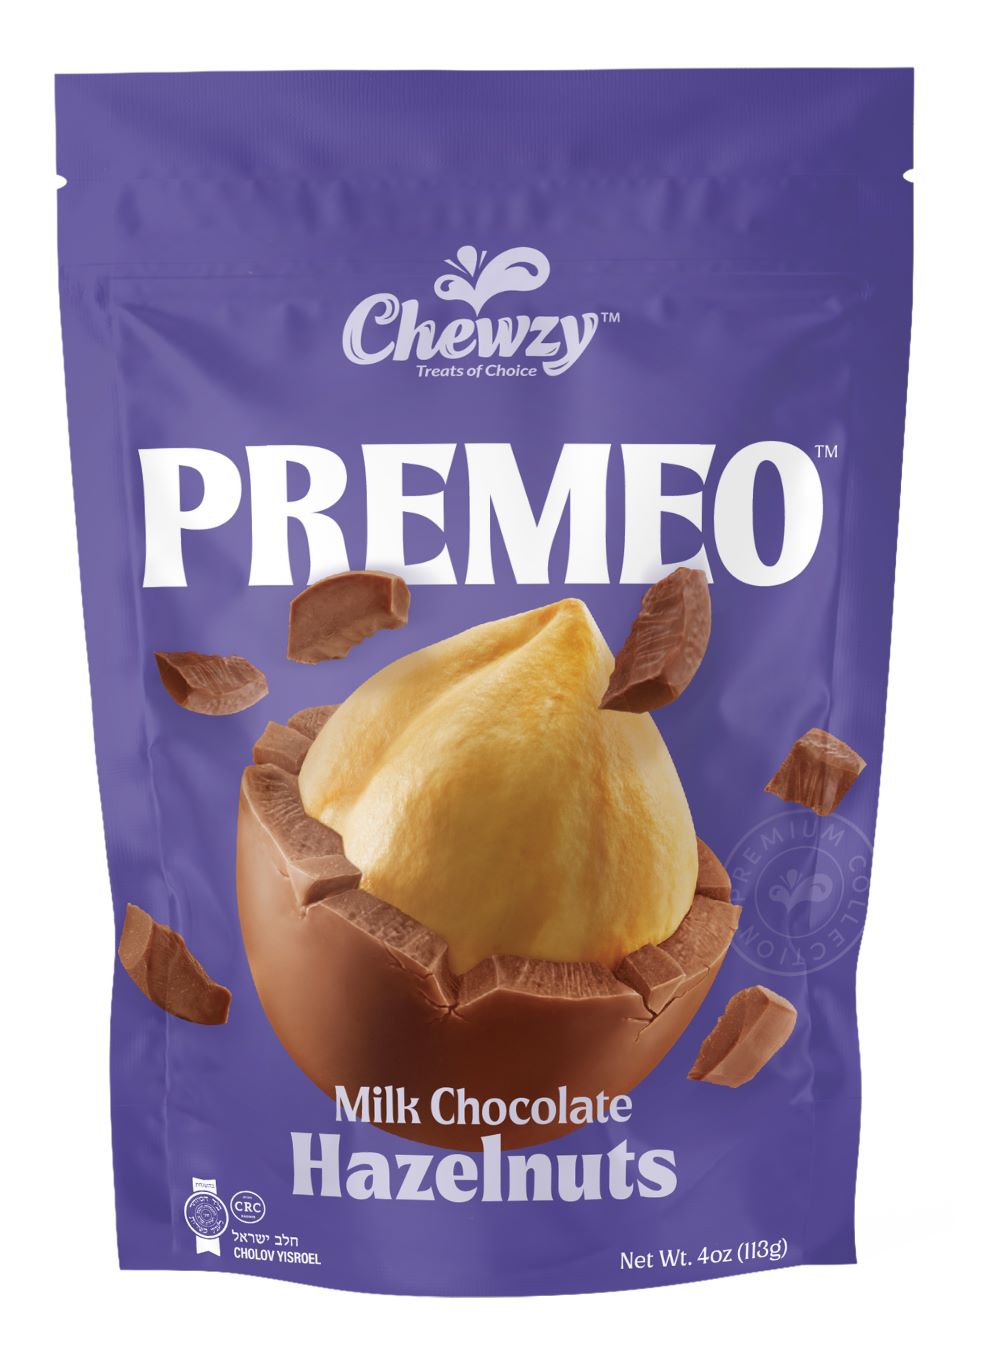 CHEWZY PREMEO MILK CHOCOLATE HAZELNUTS